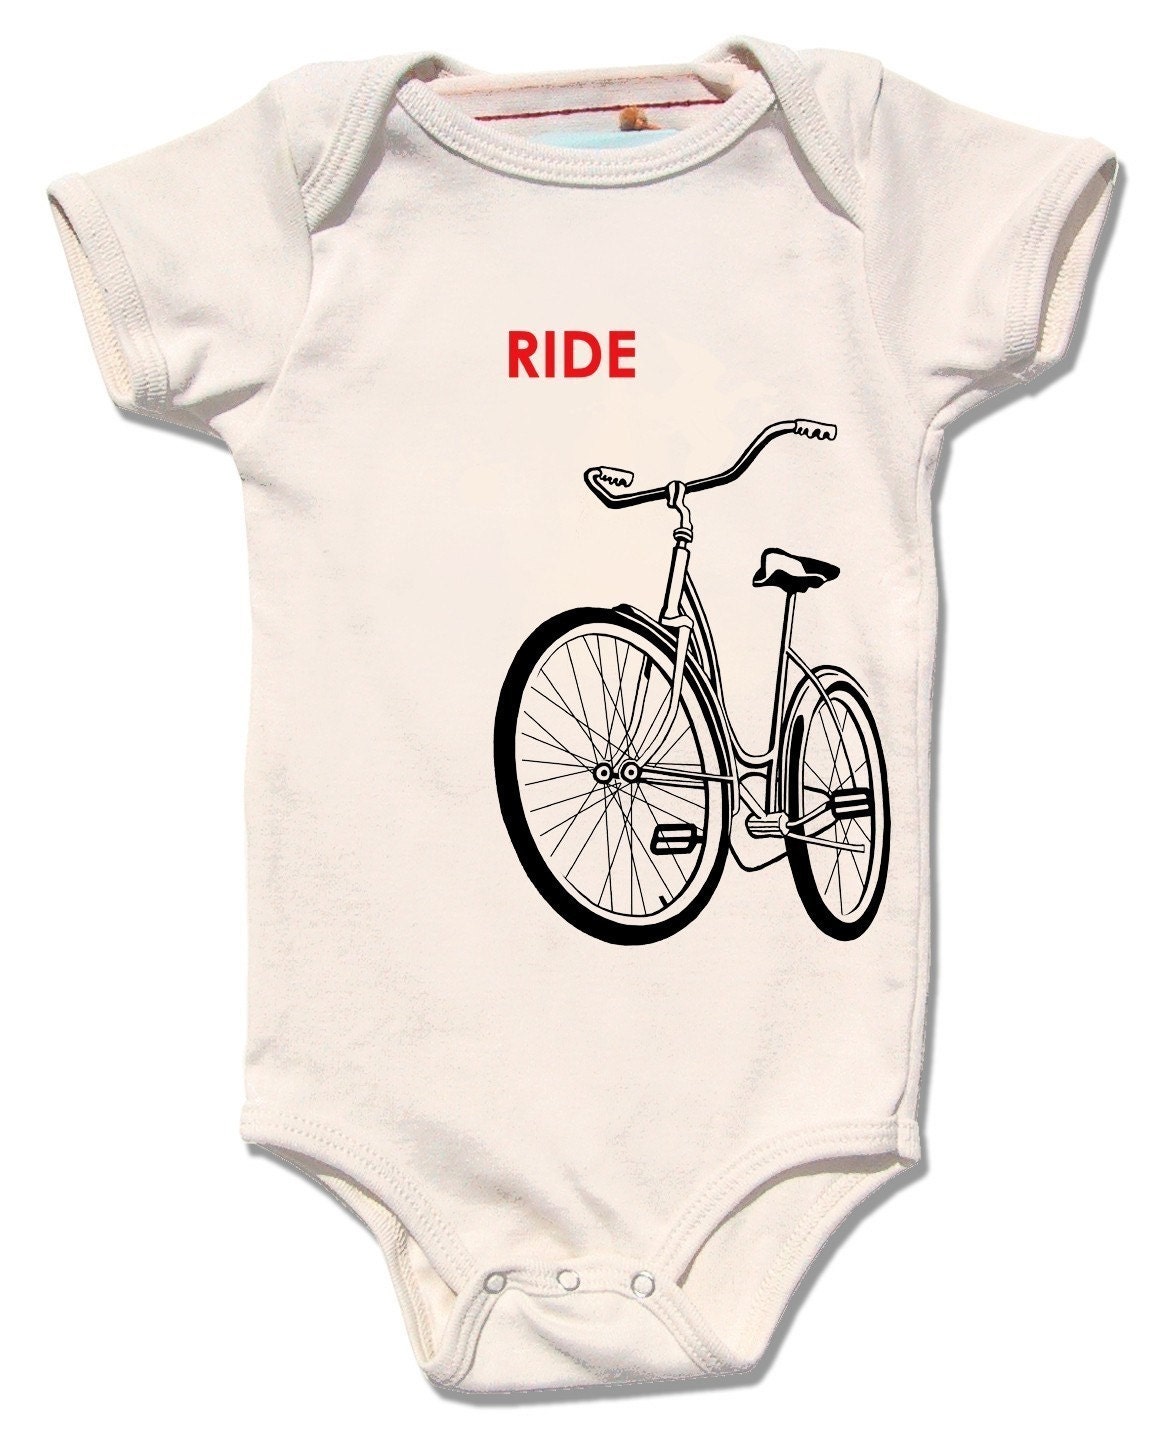 SALE Baby Bike Onesie Unisex Baby Clothes Ride a Bike | Etsy